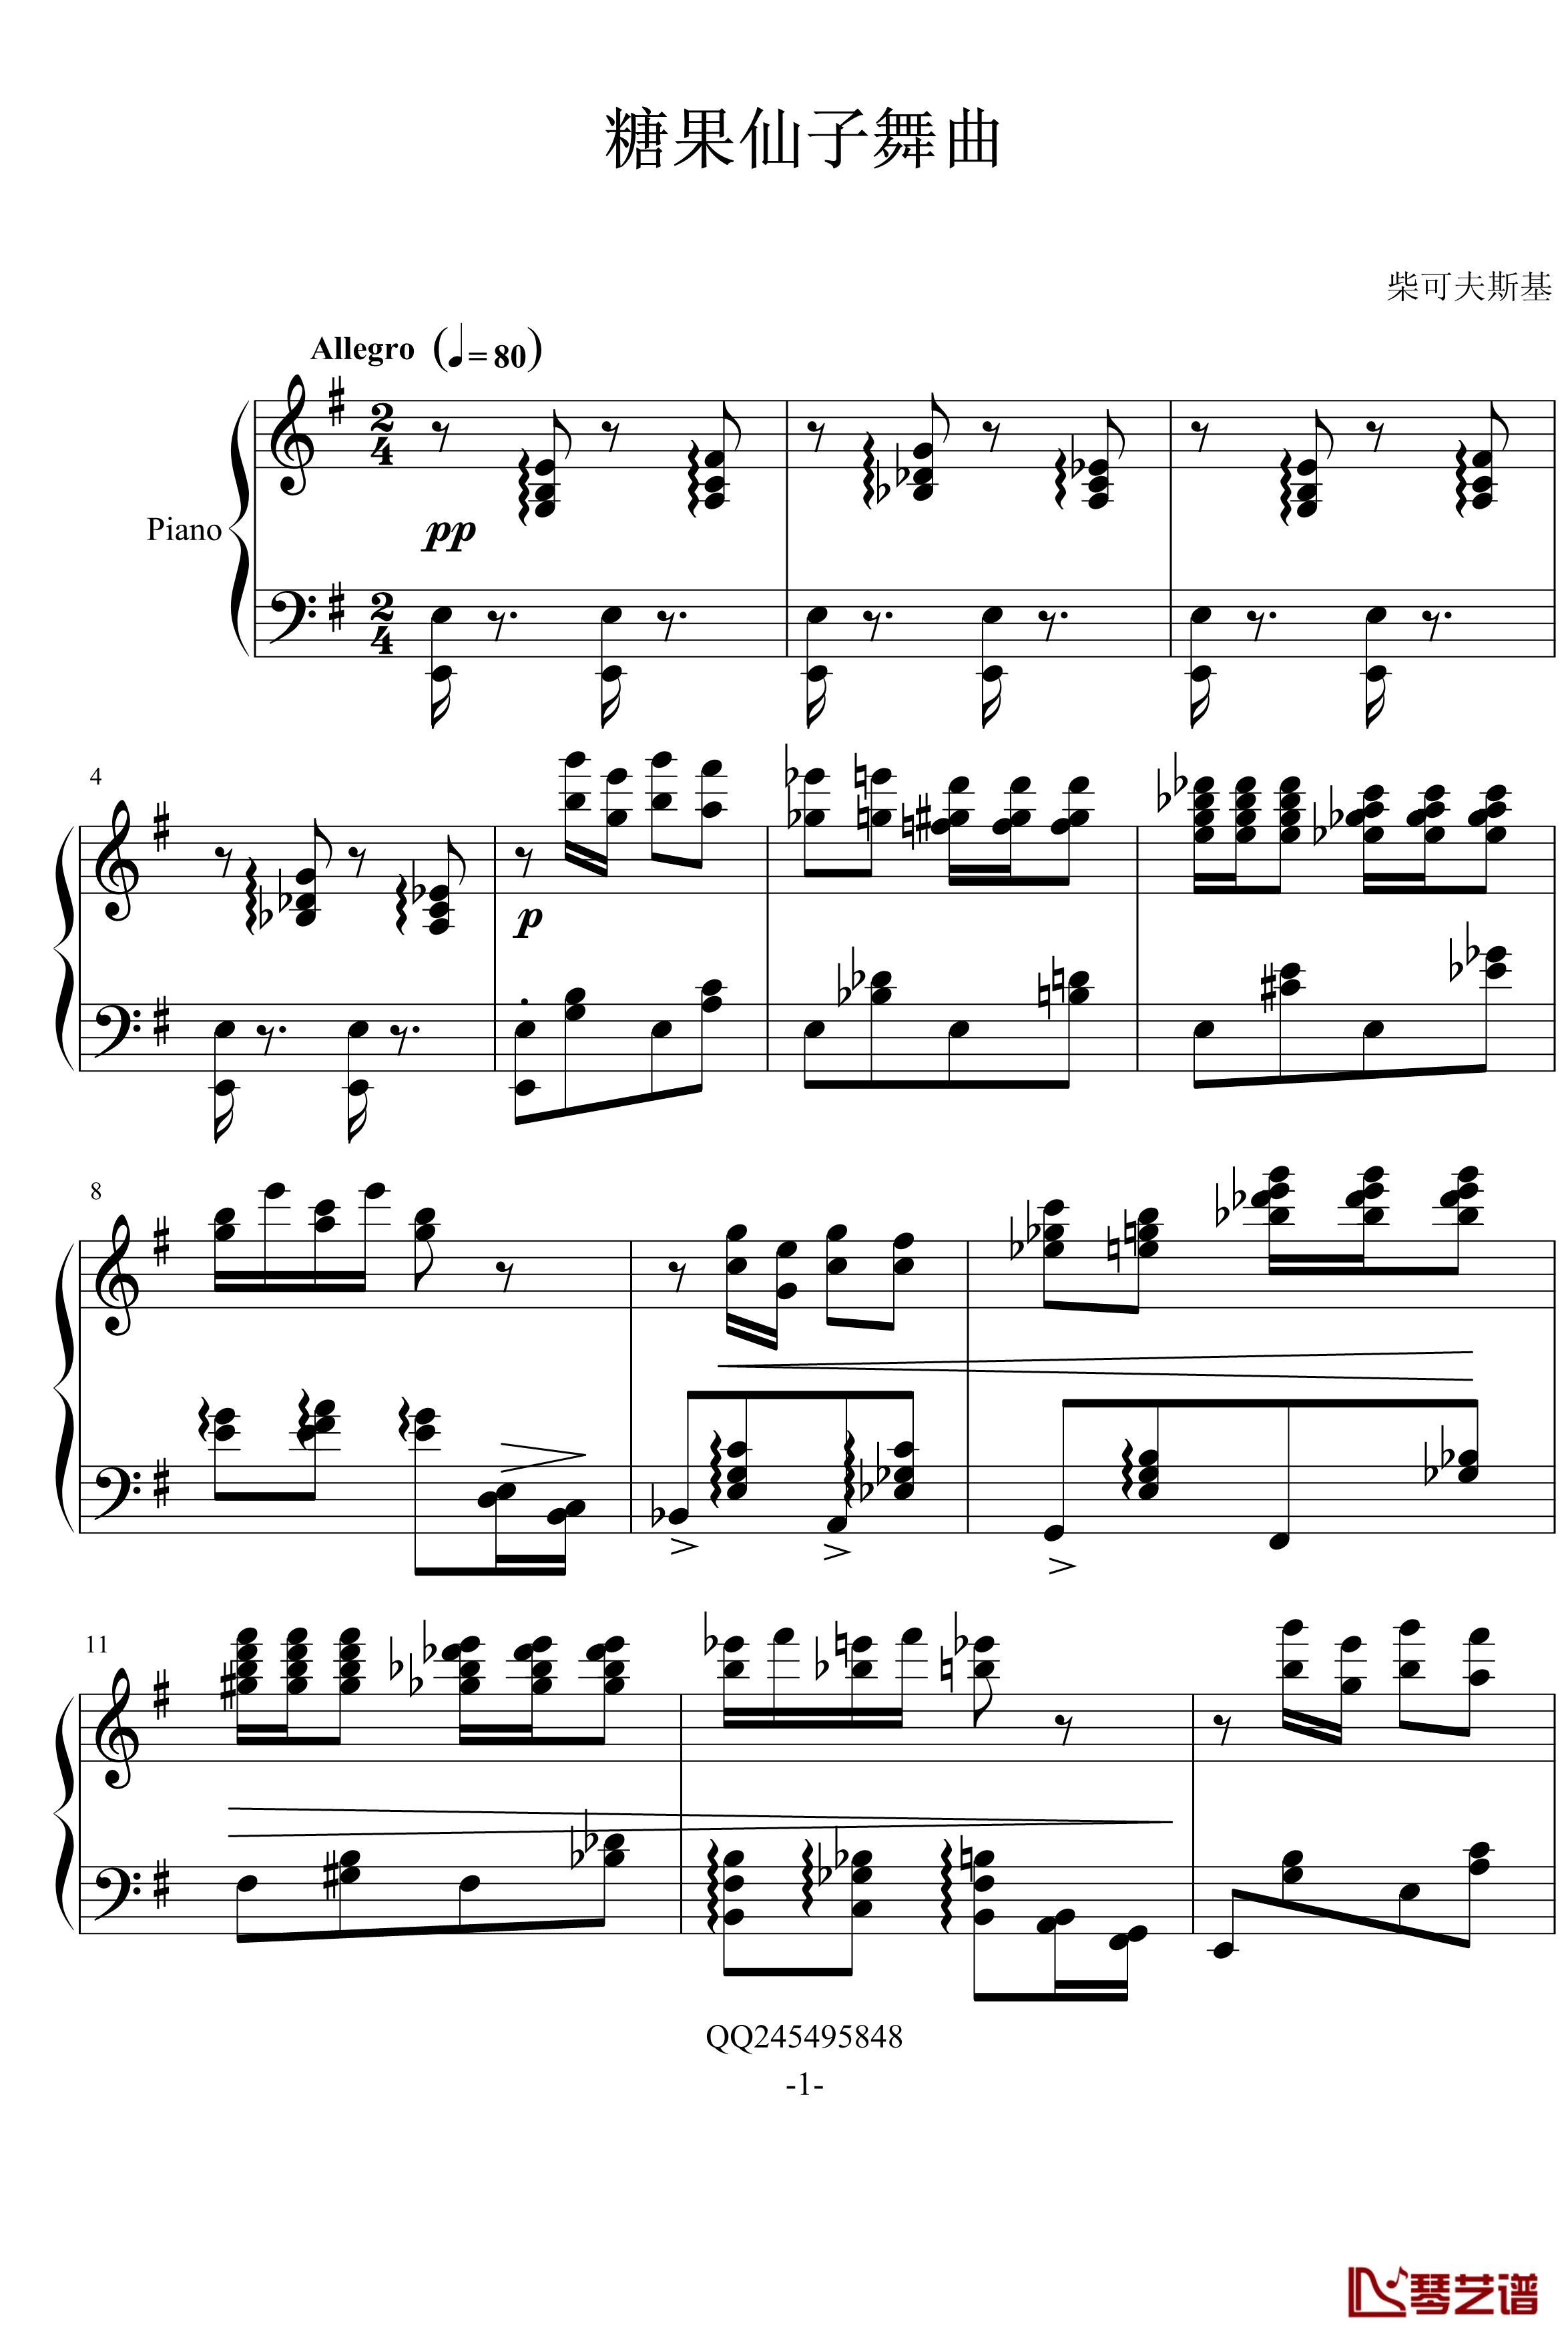 糖果仙子舞曲钢琴谱-柴科夫斯基-Peter Ilyich Tchaikovsky1